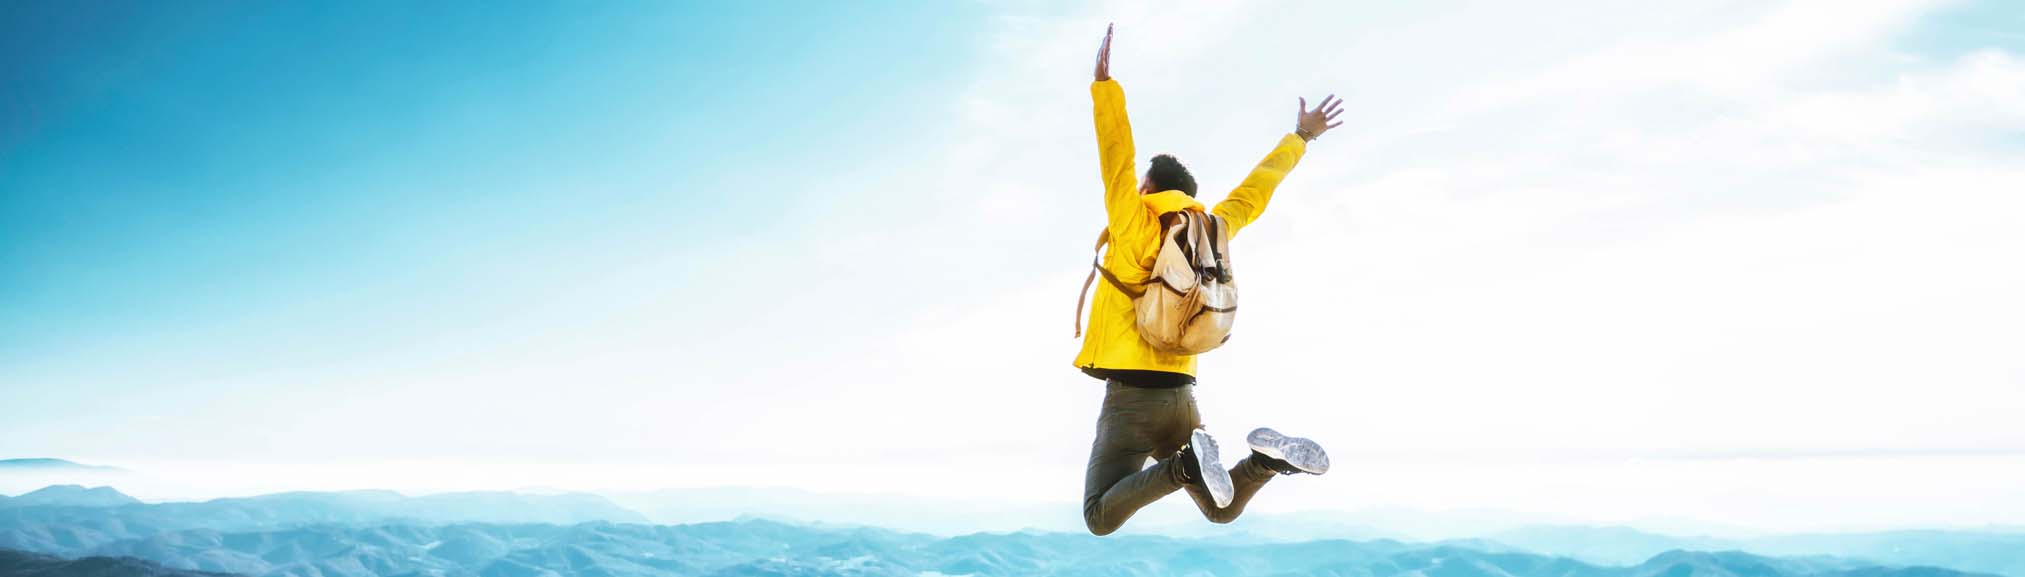 Mann springt in die Luft vor Freude, abgesichert durch die Reisestornoversicherung und geschützt vor hohen Kosten